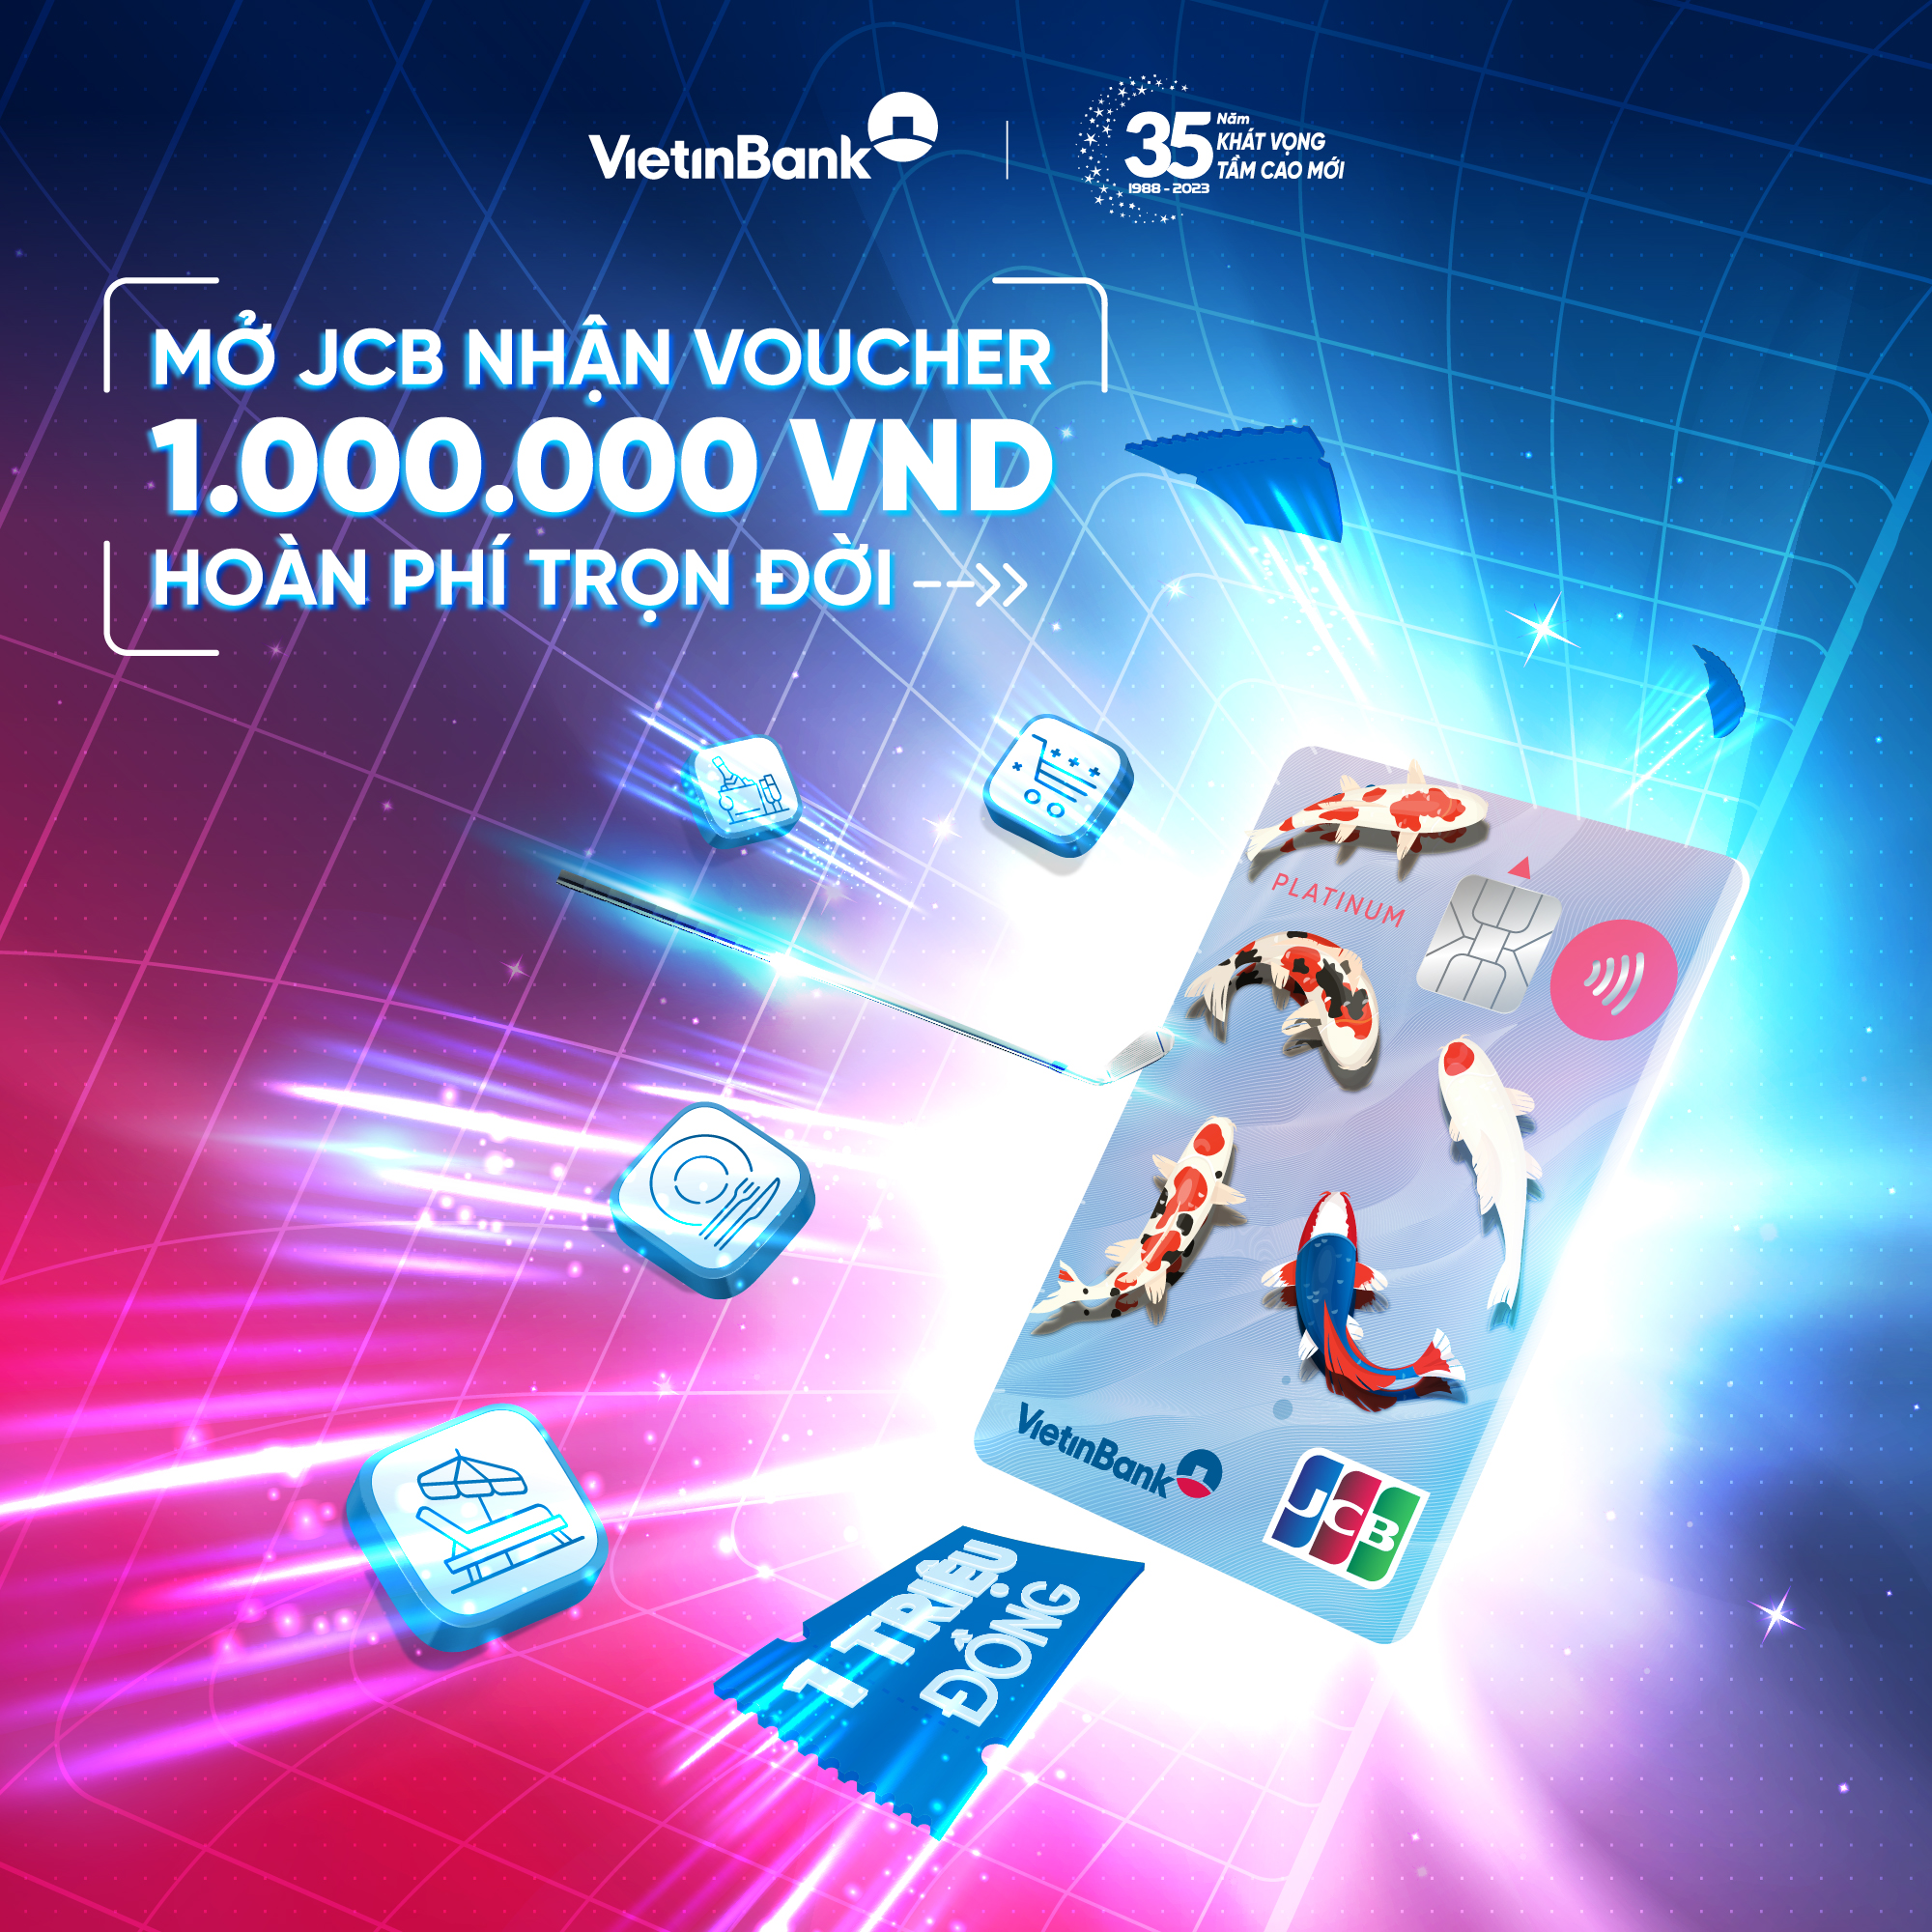 VietinBank ra mắt sản phẩm thẻ VietinBank JCB Platinum, có thiết kế hiện đại mang đậm giá trị văn hóa Nhật Bản cùng nhiều ưu đãi (Ảnh: Vietinbank).